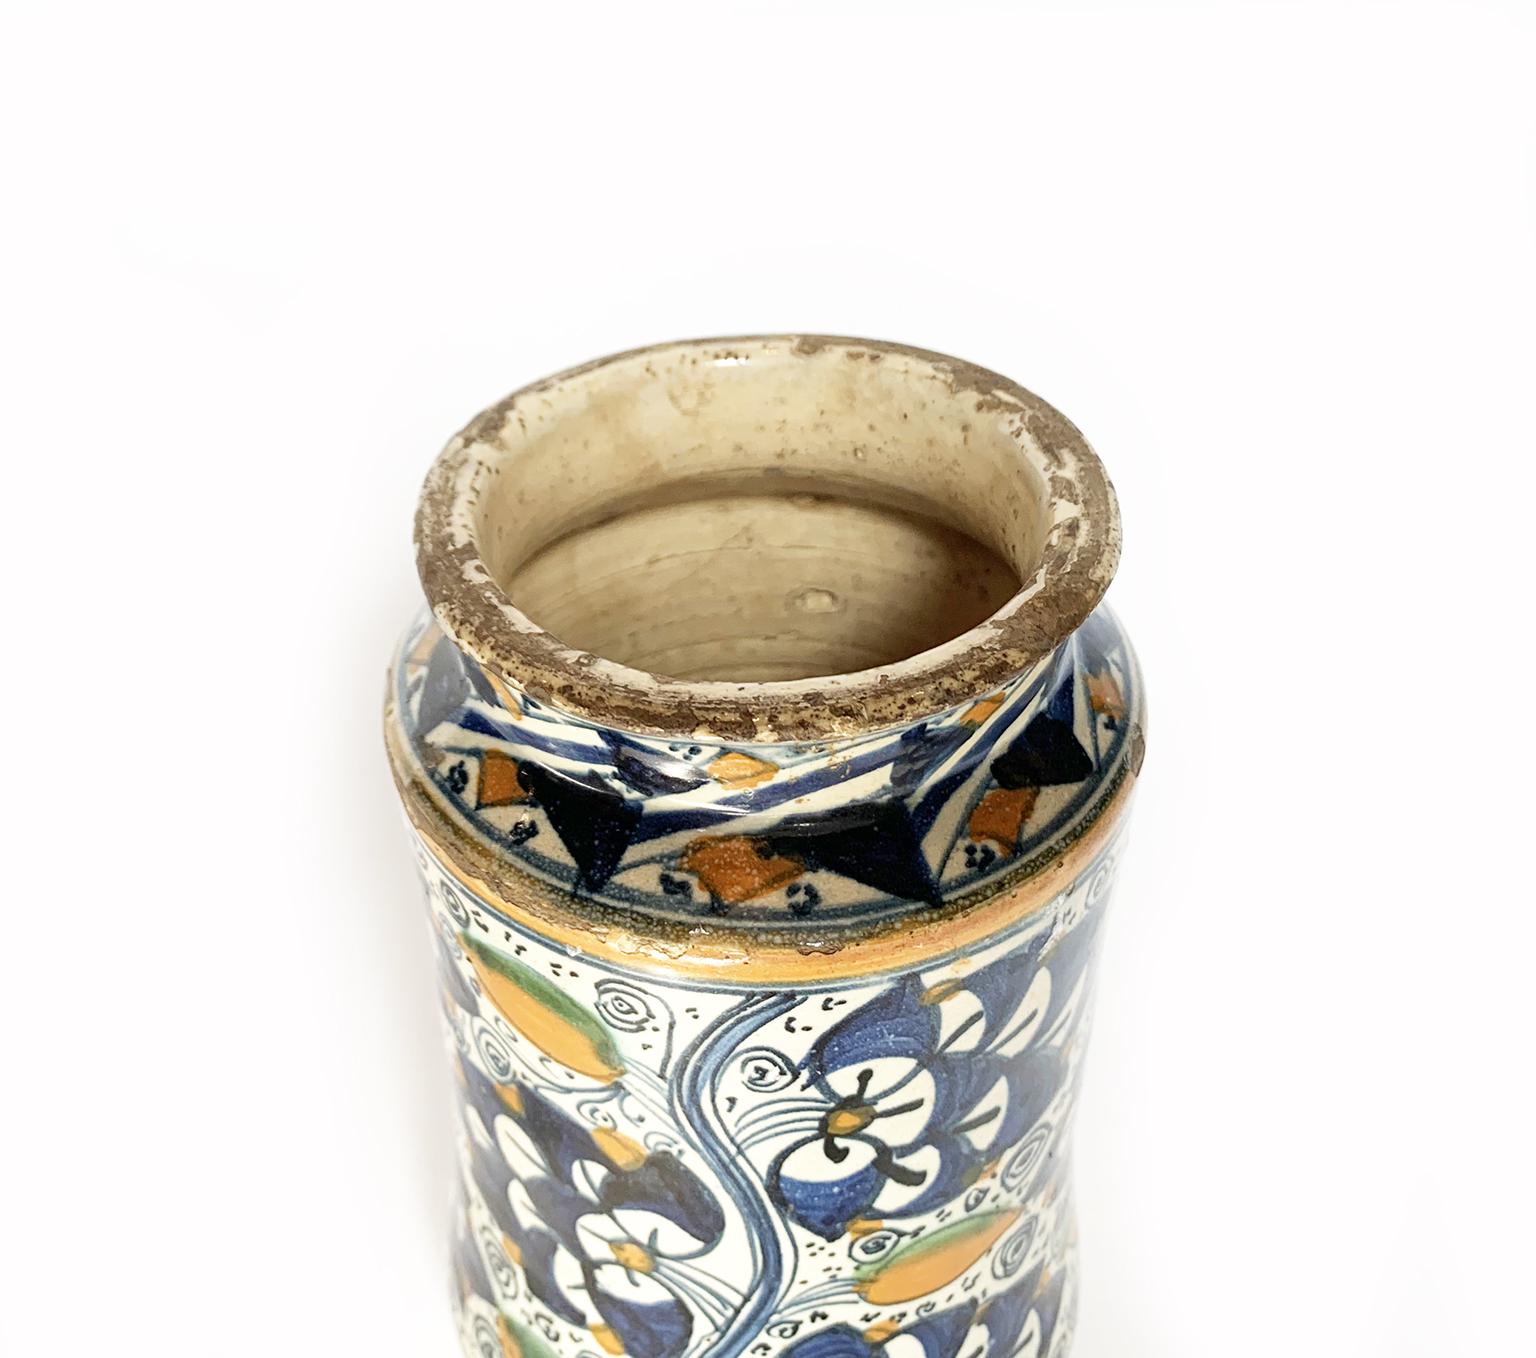 Earthenware Ancient Maiolia Drag Jar or Albarello, Montelupo, 1490-1510